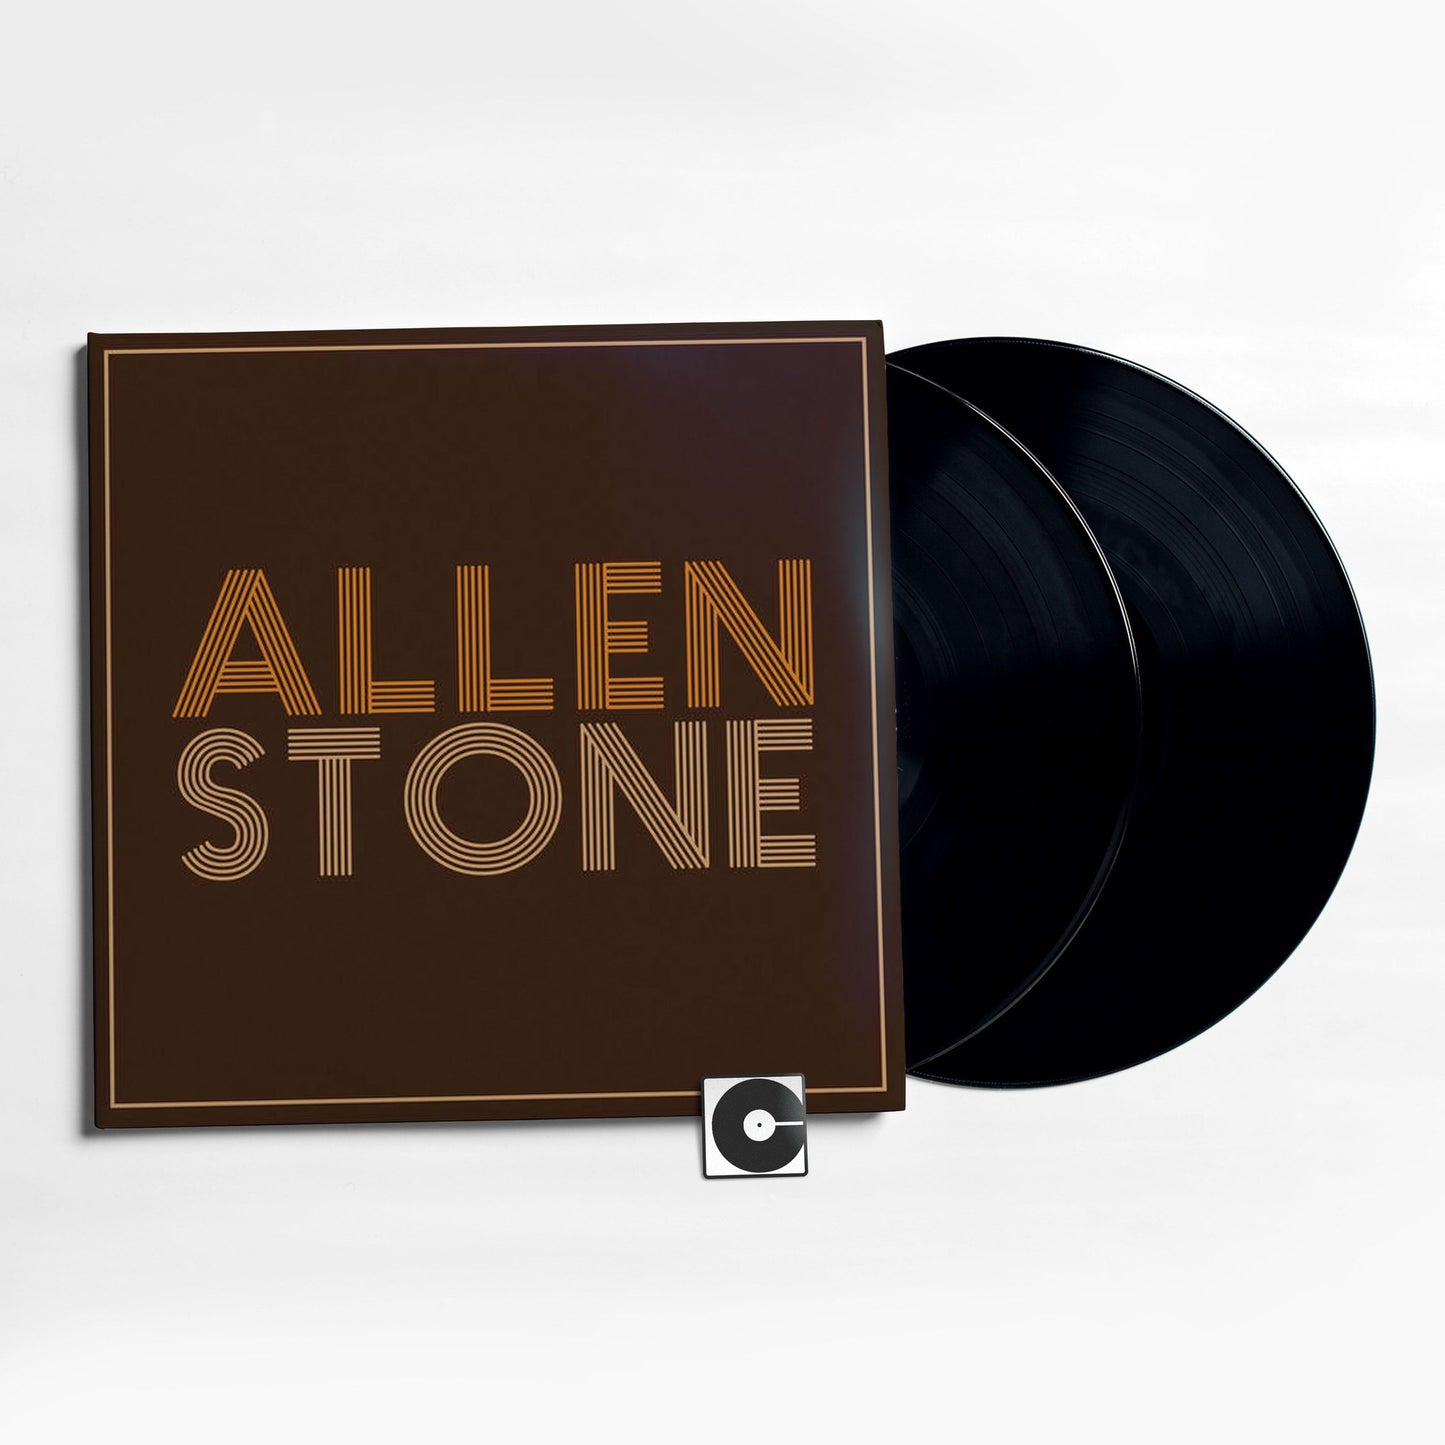 Allen Stone - "Allen Stone"